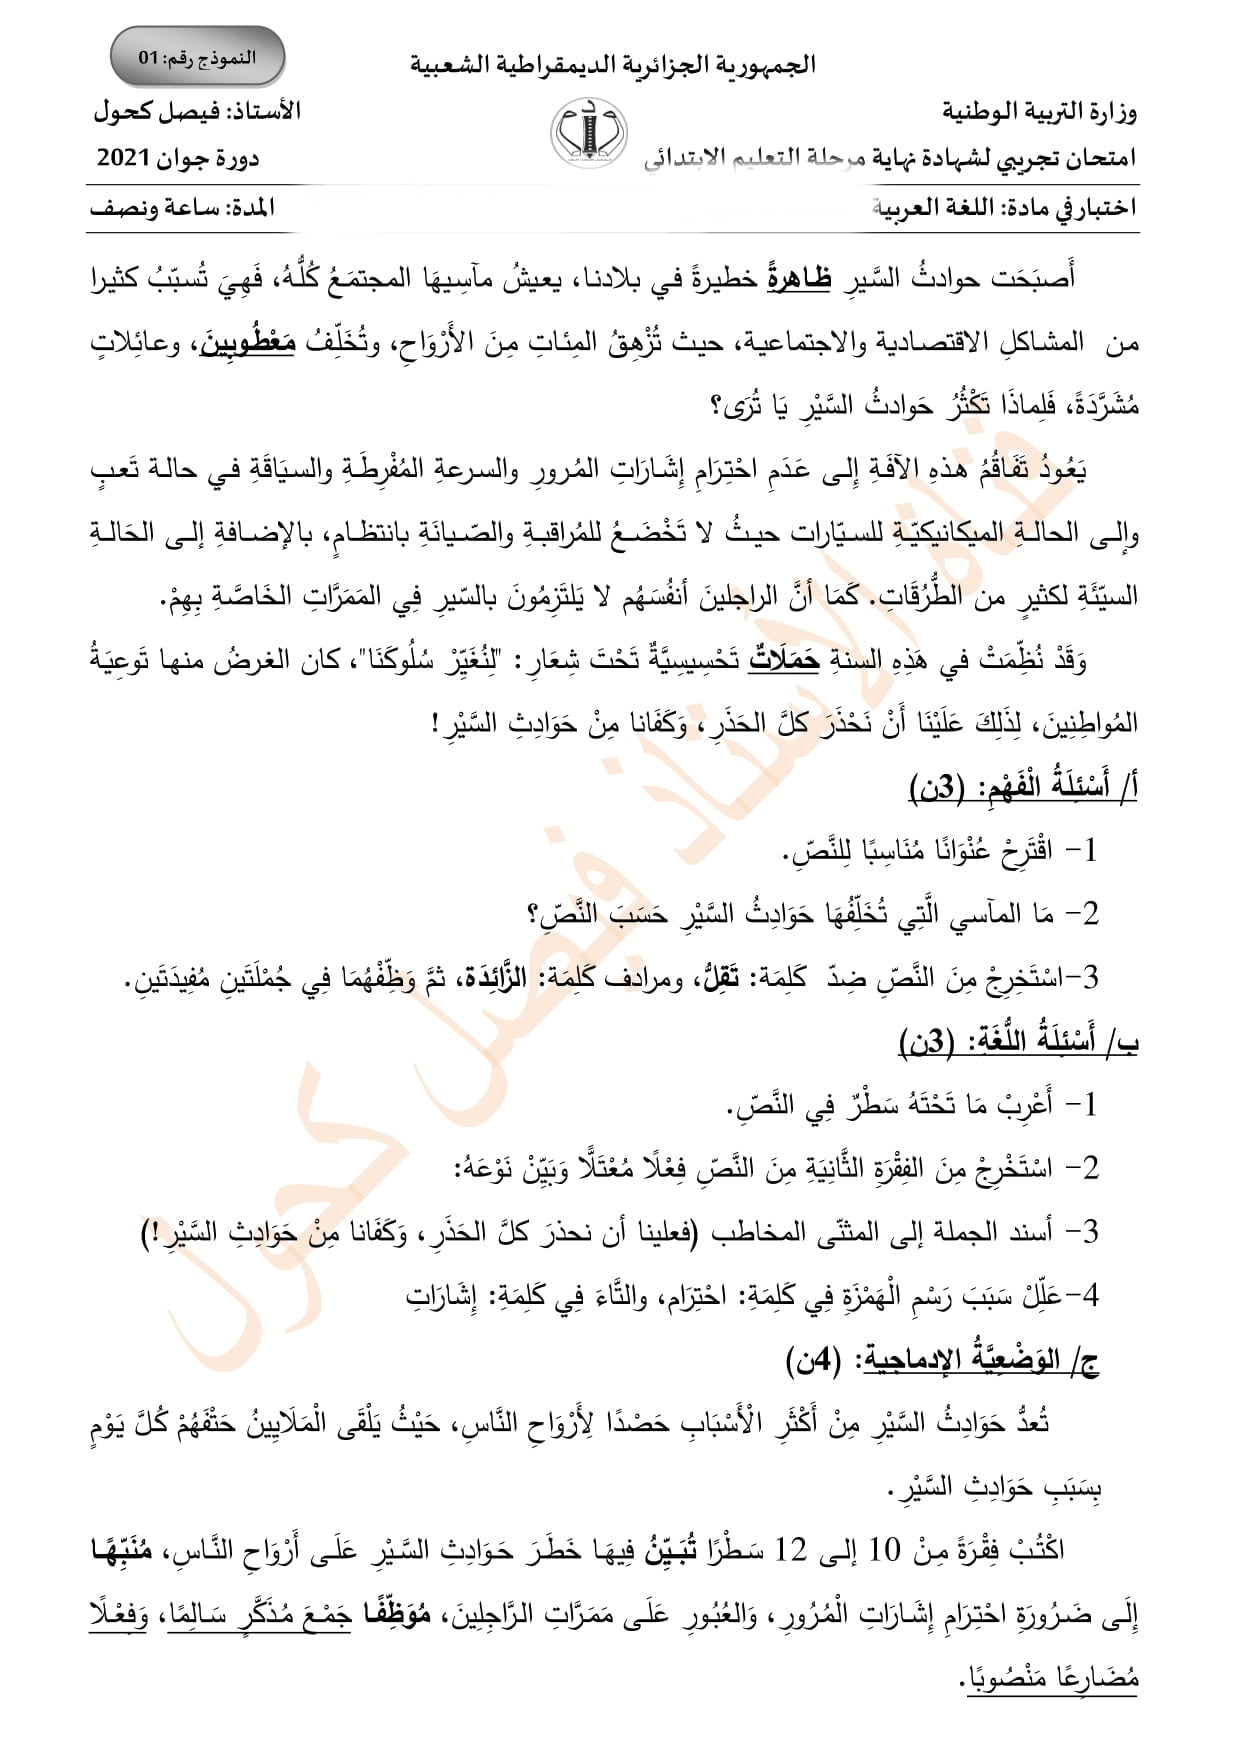 اختبار تجريبي في مادة اللغة العربية لامتحان شهادة التعليم الابتدائي 2021 نموذج رقم 2 1